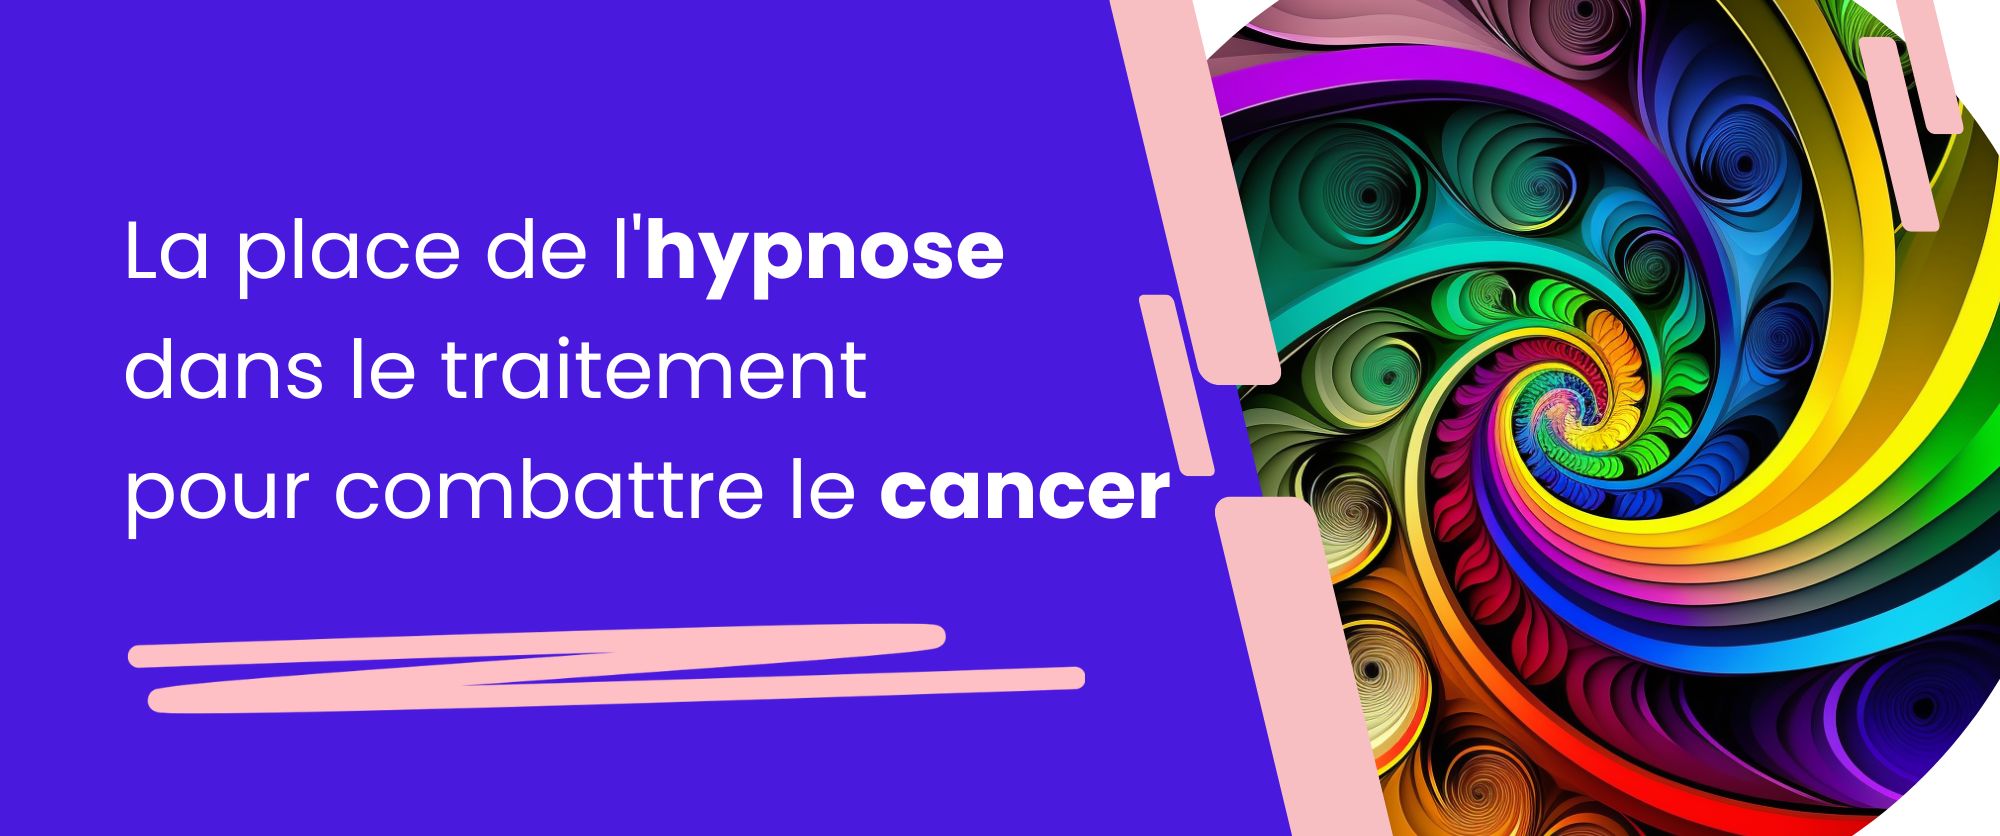 hypnose cancer